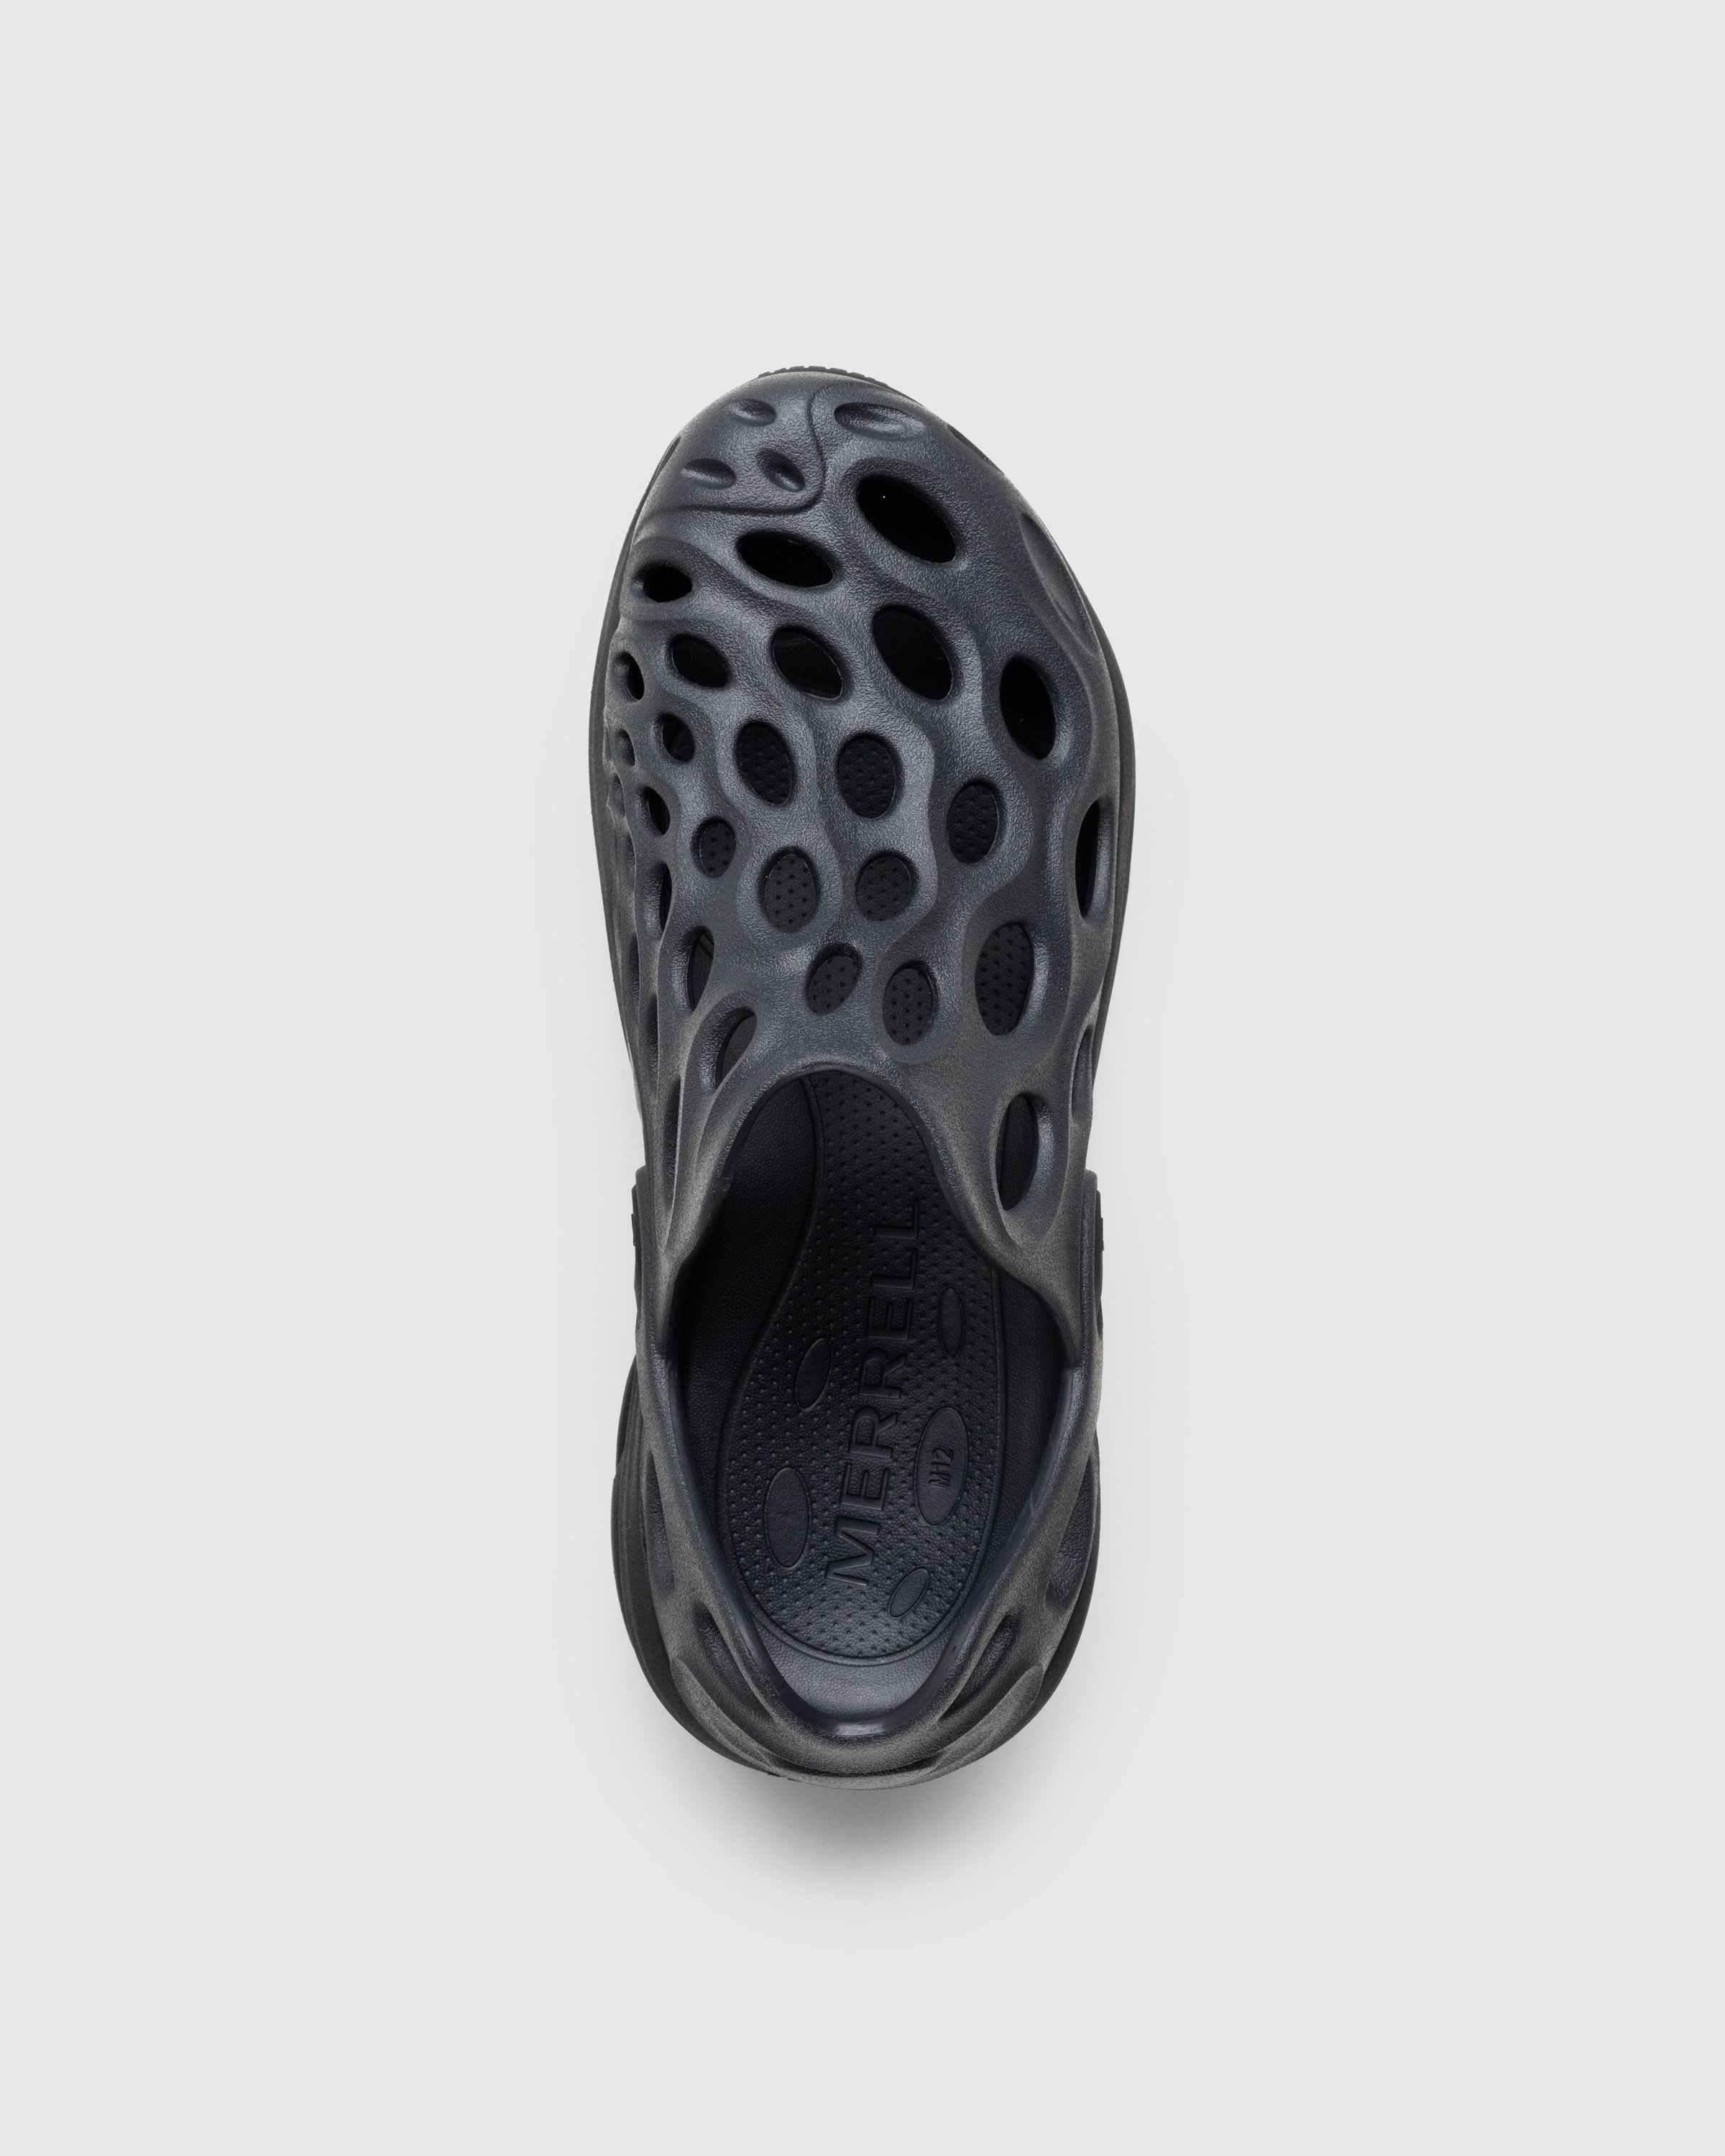 Merrell - HYDRO NEXT GEN MOC SE/TRIPLE BLACK - Footwear - Black - Image 5